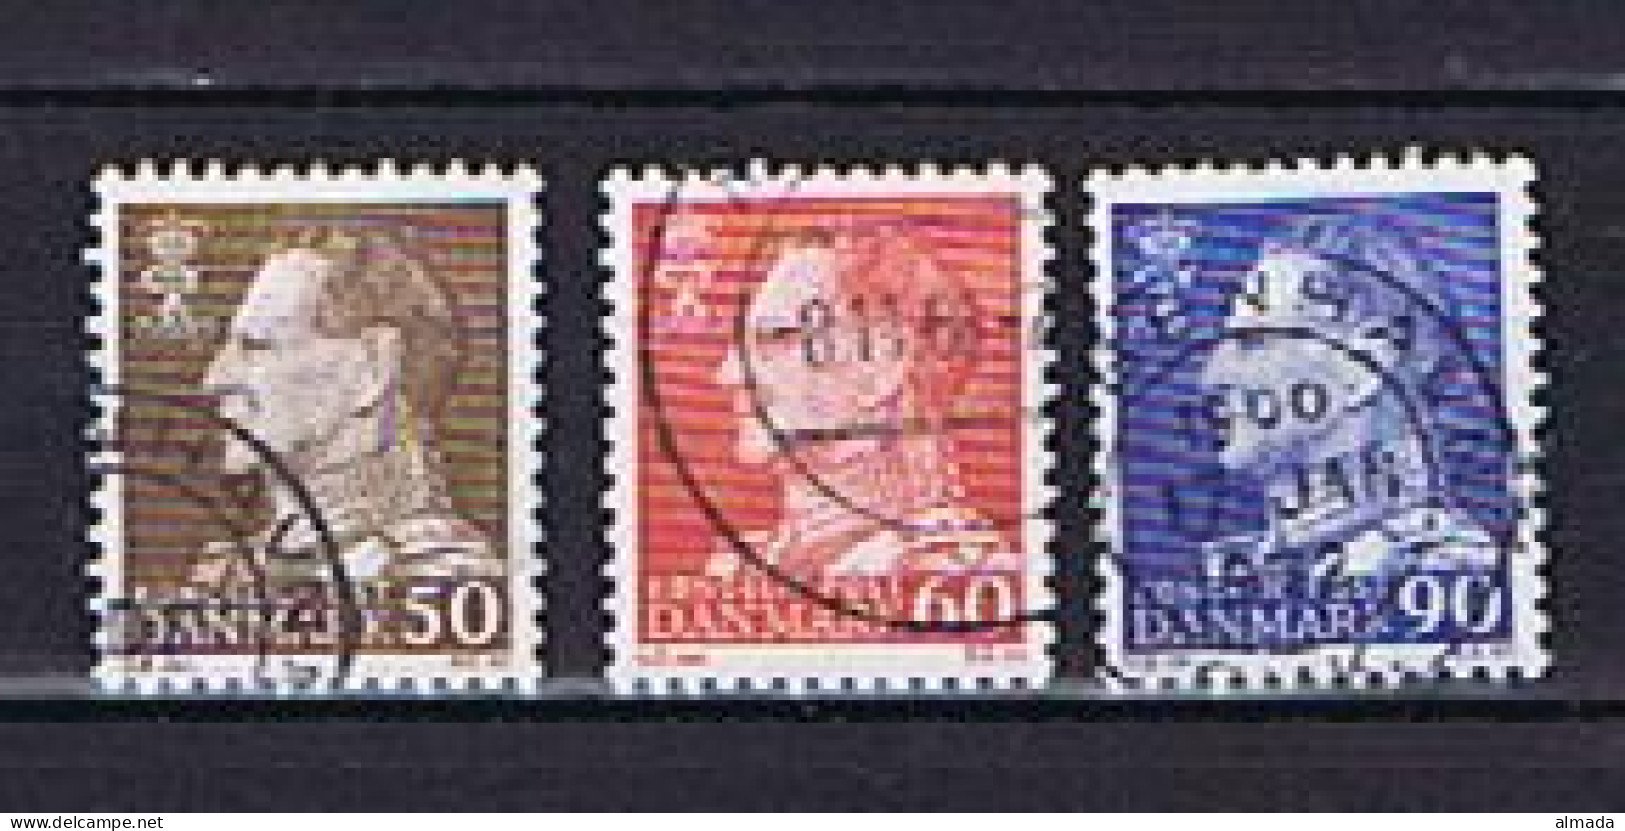 Dänemark, Denmark 1967: Michel 457-458, 460 Fluor. Papier Gestempelt, Used - Gebraucht